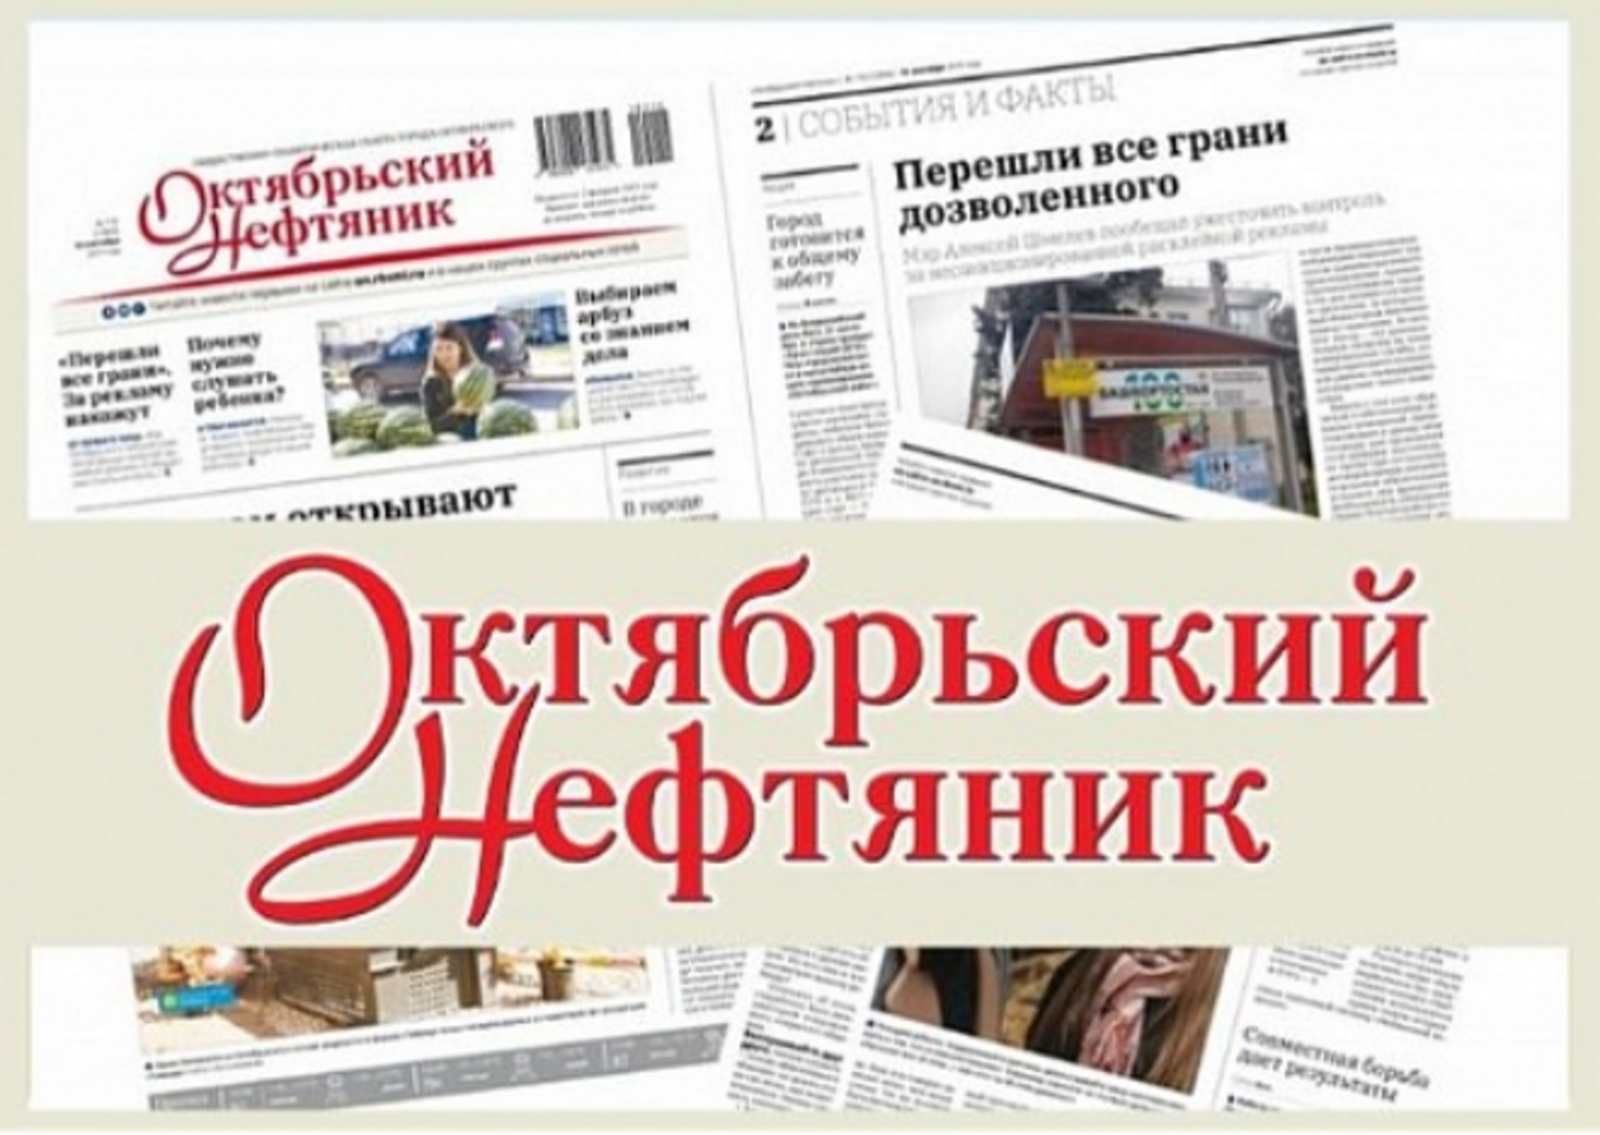 Фирму оштрафовали на пятьсот тысяч рублей